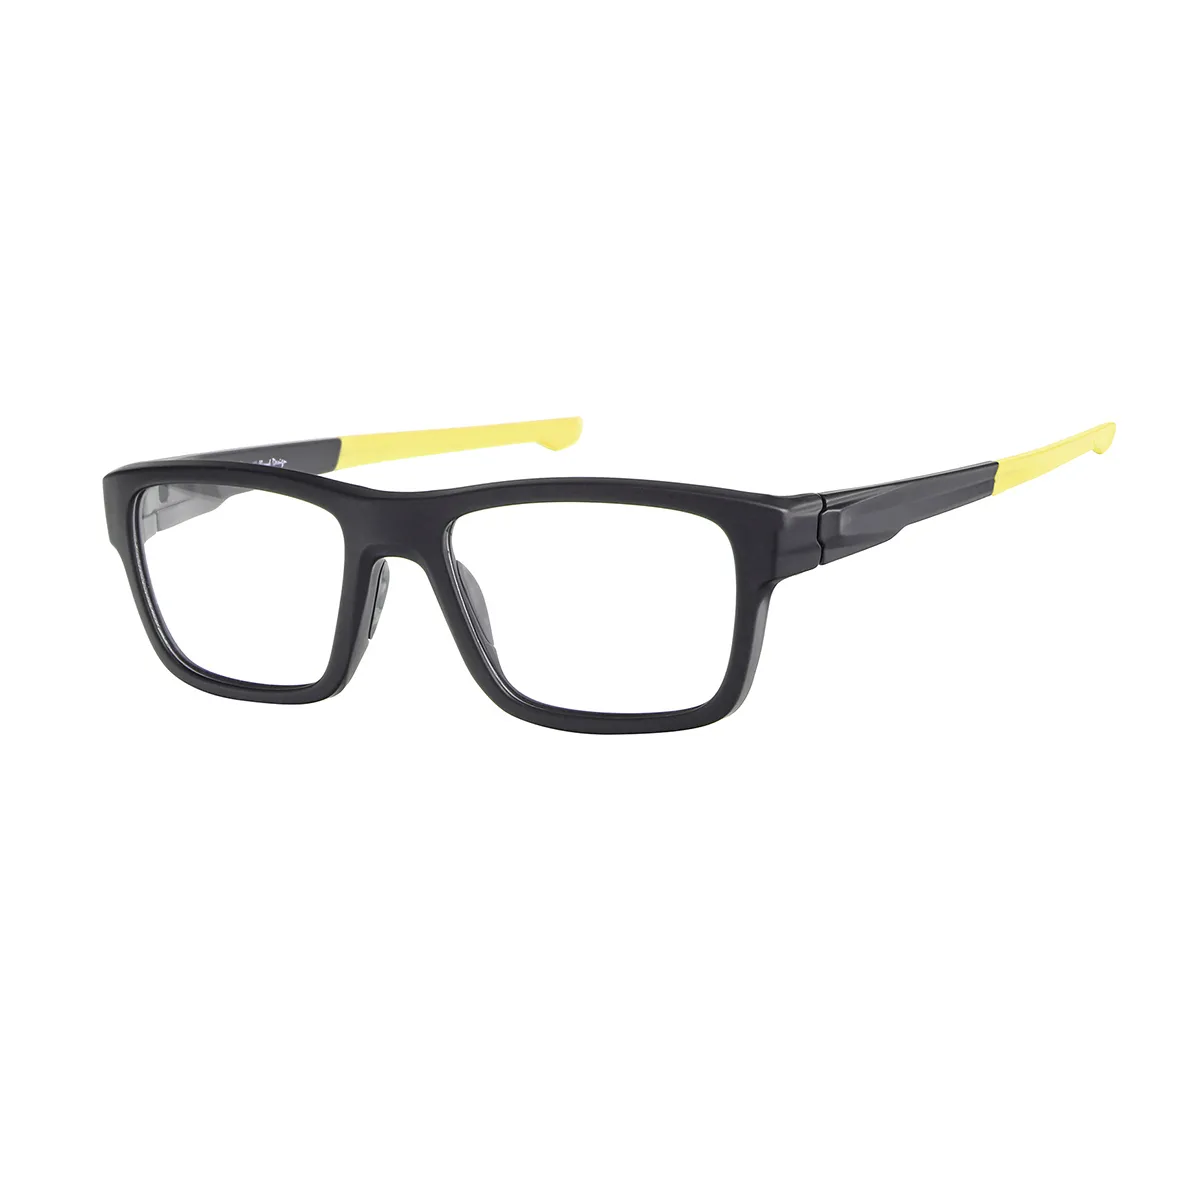 Hawthorne - Rectangle Black-Yellow Glasses for Men - EFE